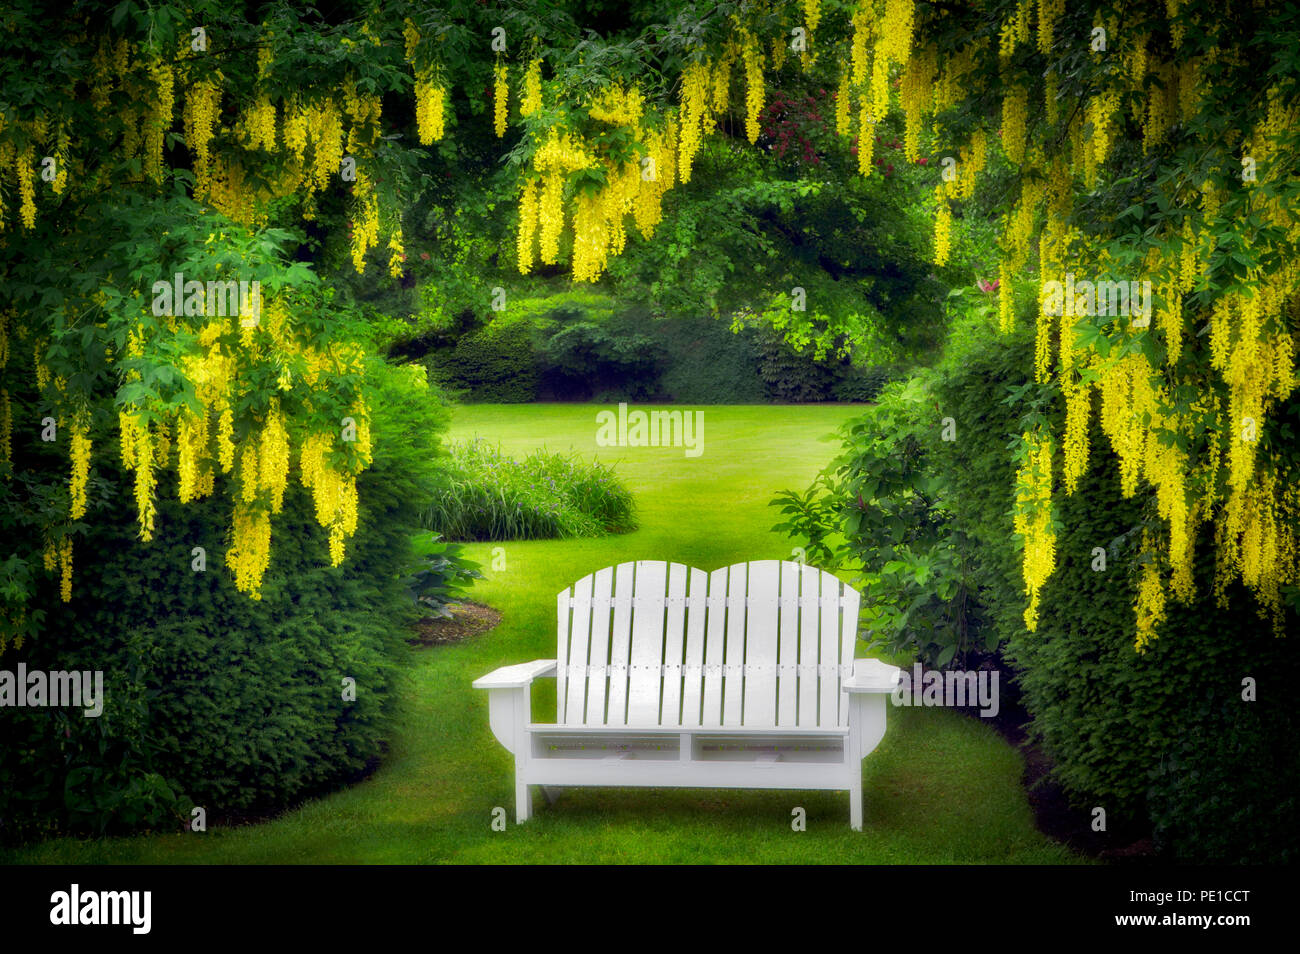 Bench and Golden Chain tree. Schreiner's Iris Gardens. Oregon Stock Photo